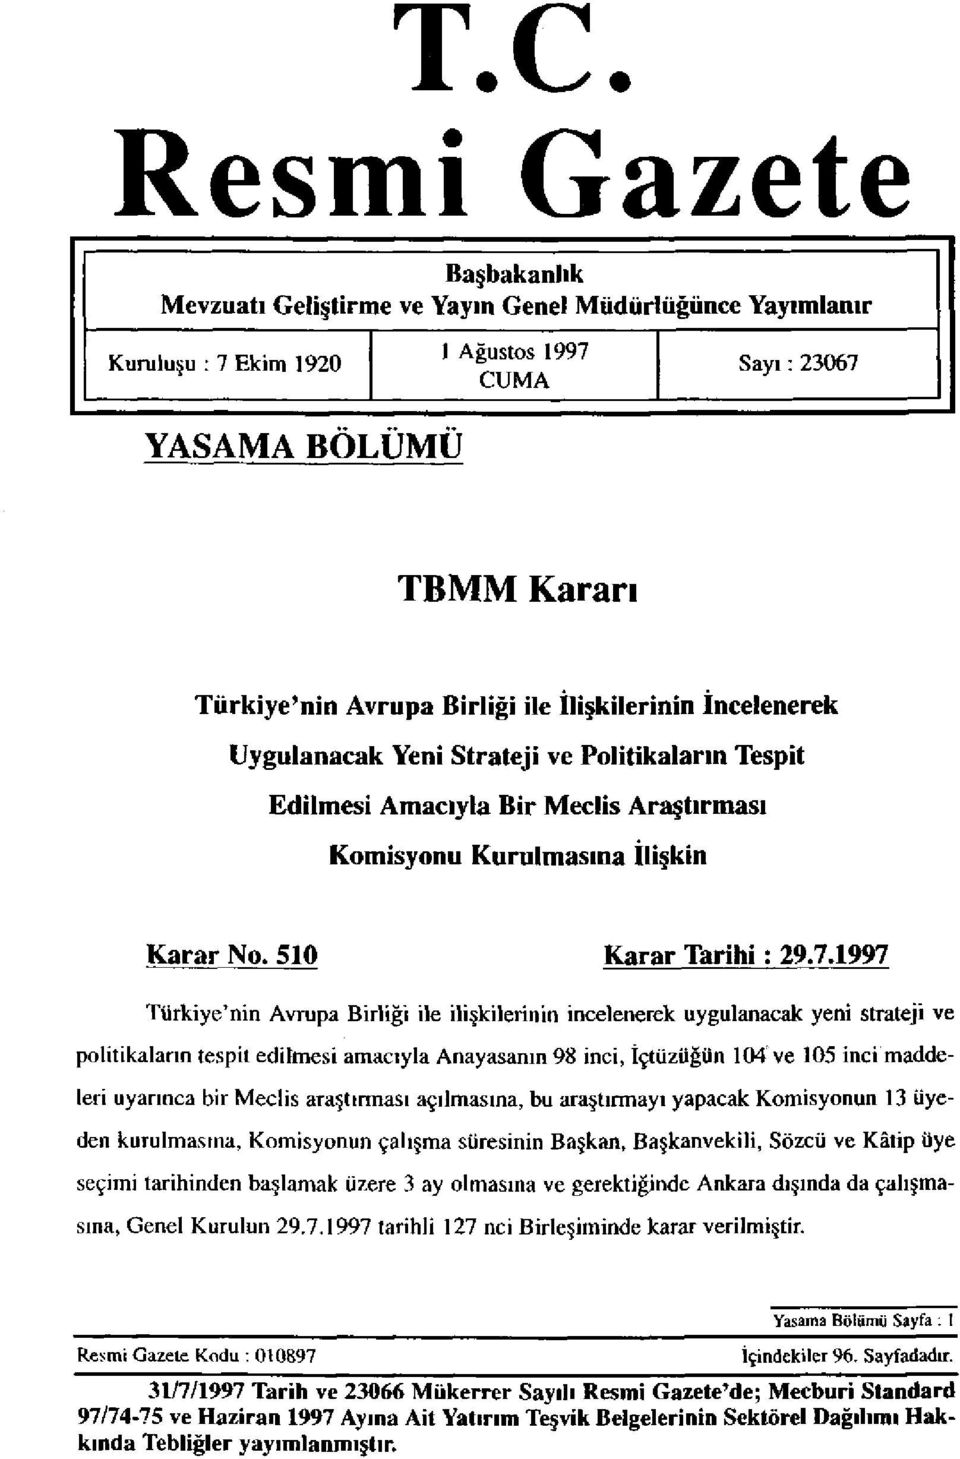 1997 Türkiye'nin Avrupa Birliği ile ilişkilerinin incelenerek uygulanacak yeni strateji ve politikaların tespit edilmesi amacıyla Anayasanın 98 inci, İçtüzüğün 104 ve 105 inci maddeleri uyarınca bir